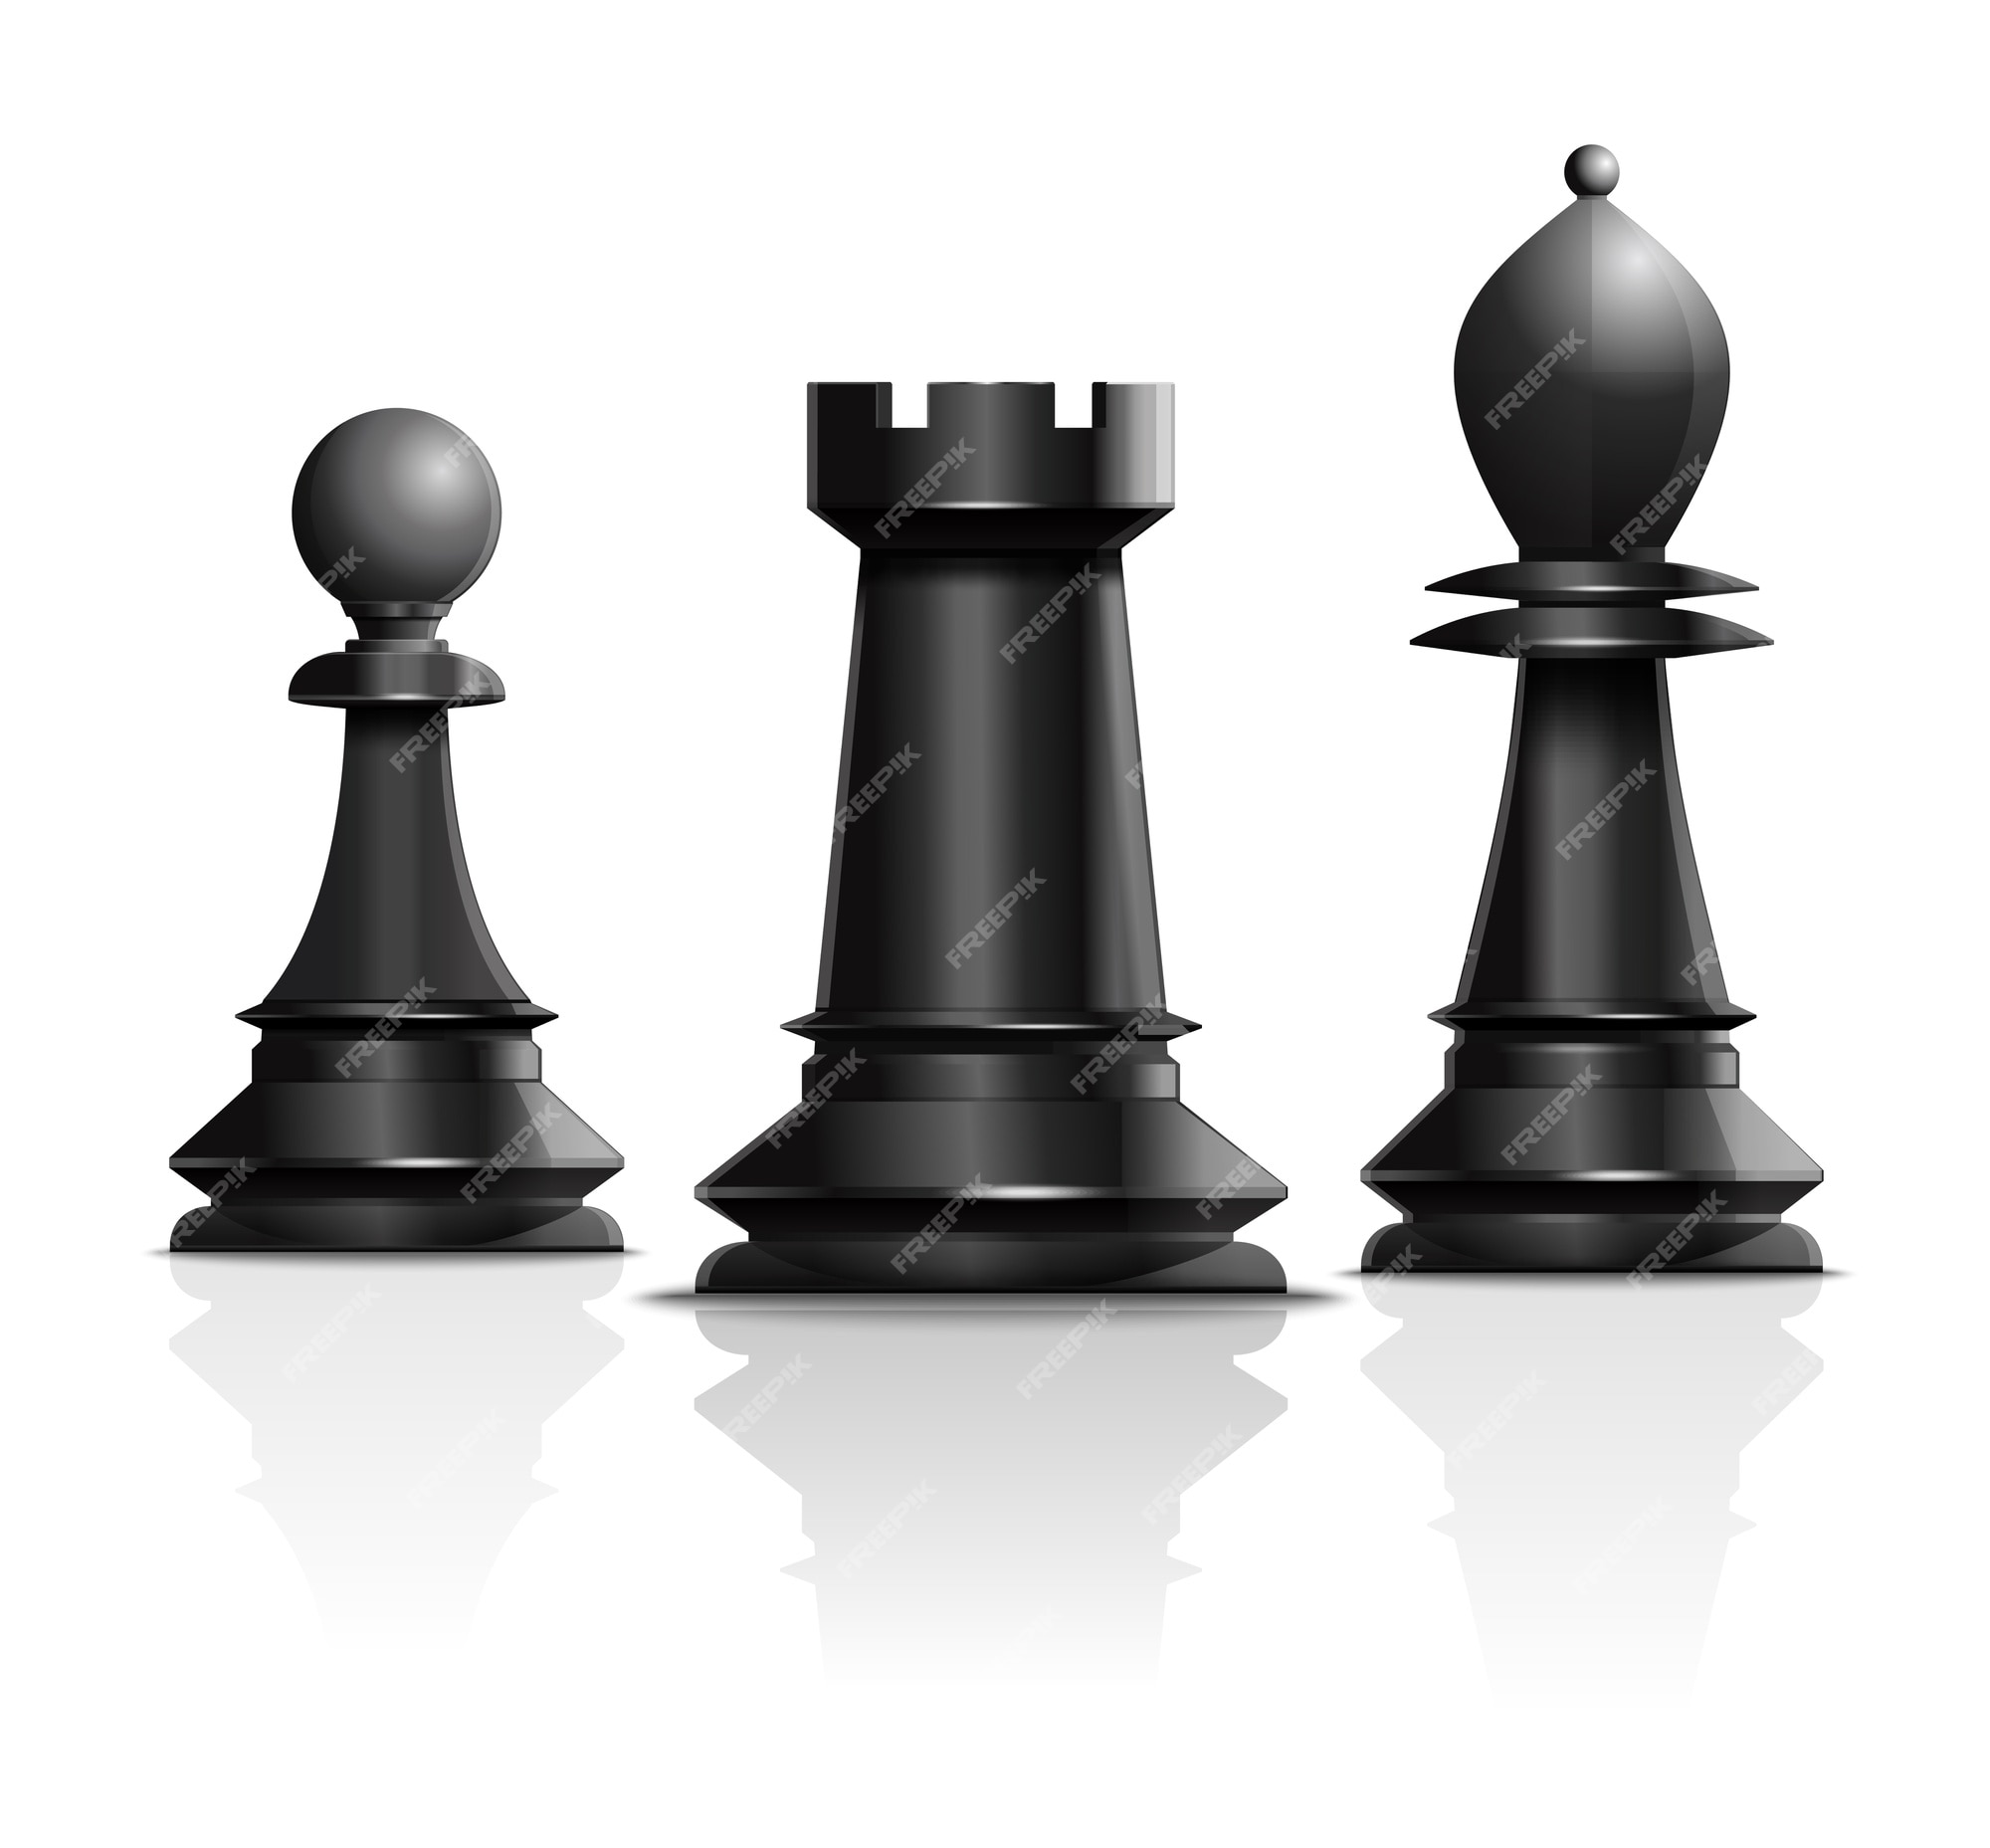 Um peão preto único e diferente no grupo de outras peças de xadrez.  conceito de diversidade e singularidade.